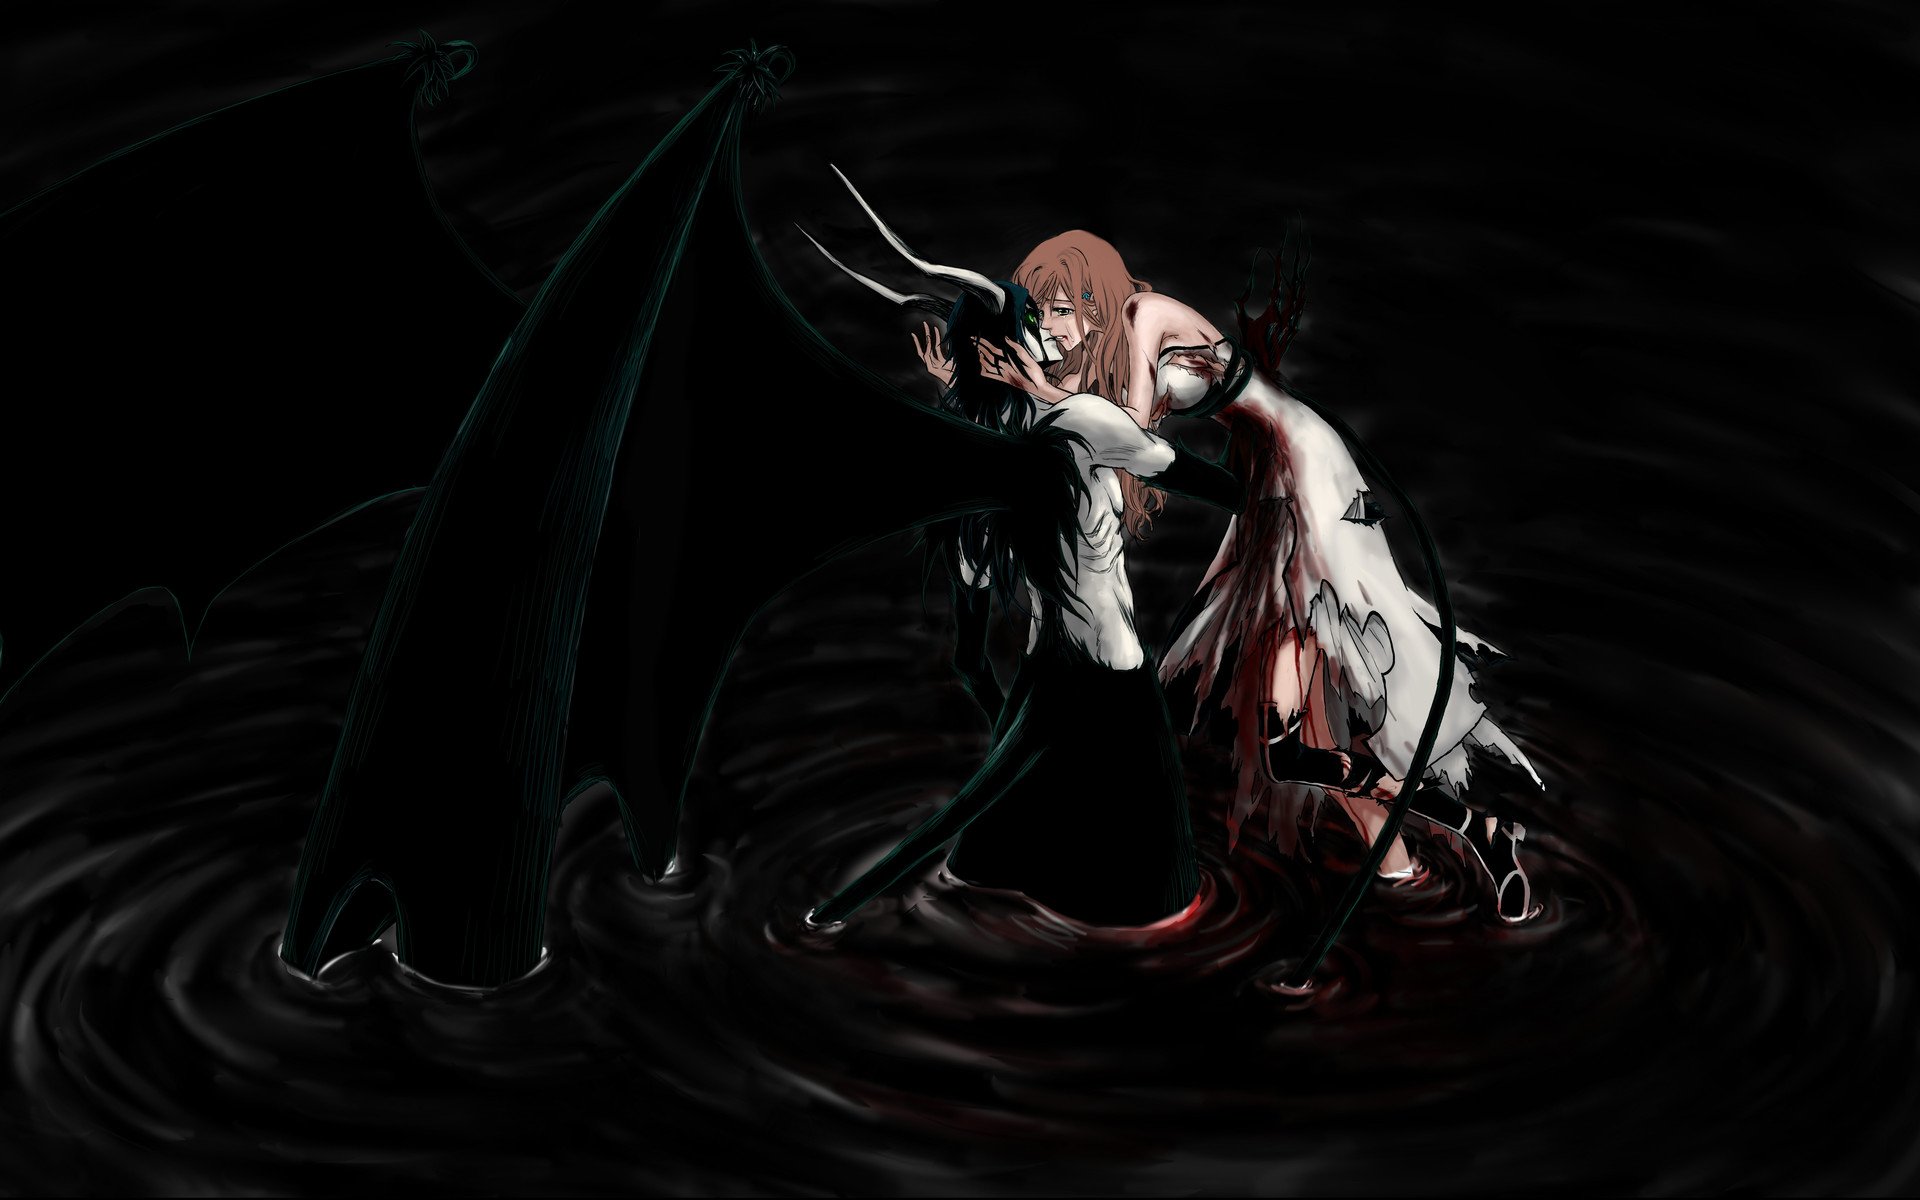 anime bleach dark demons love romance kissing artistic wallpaper